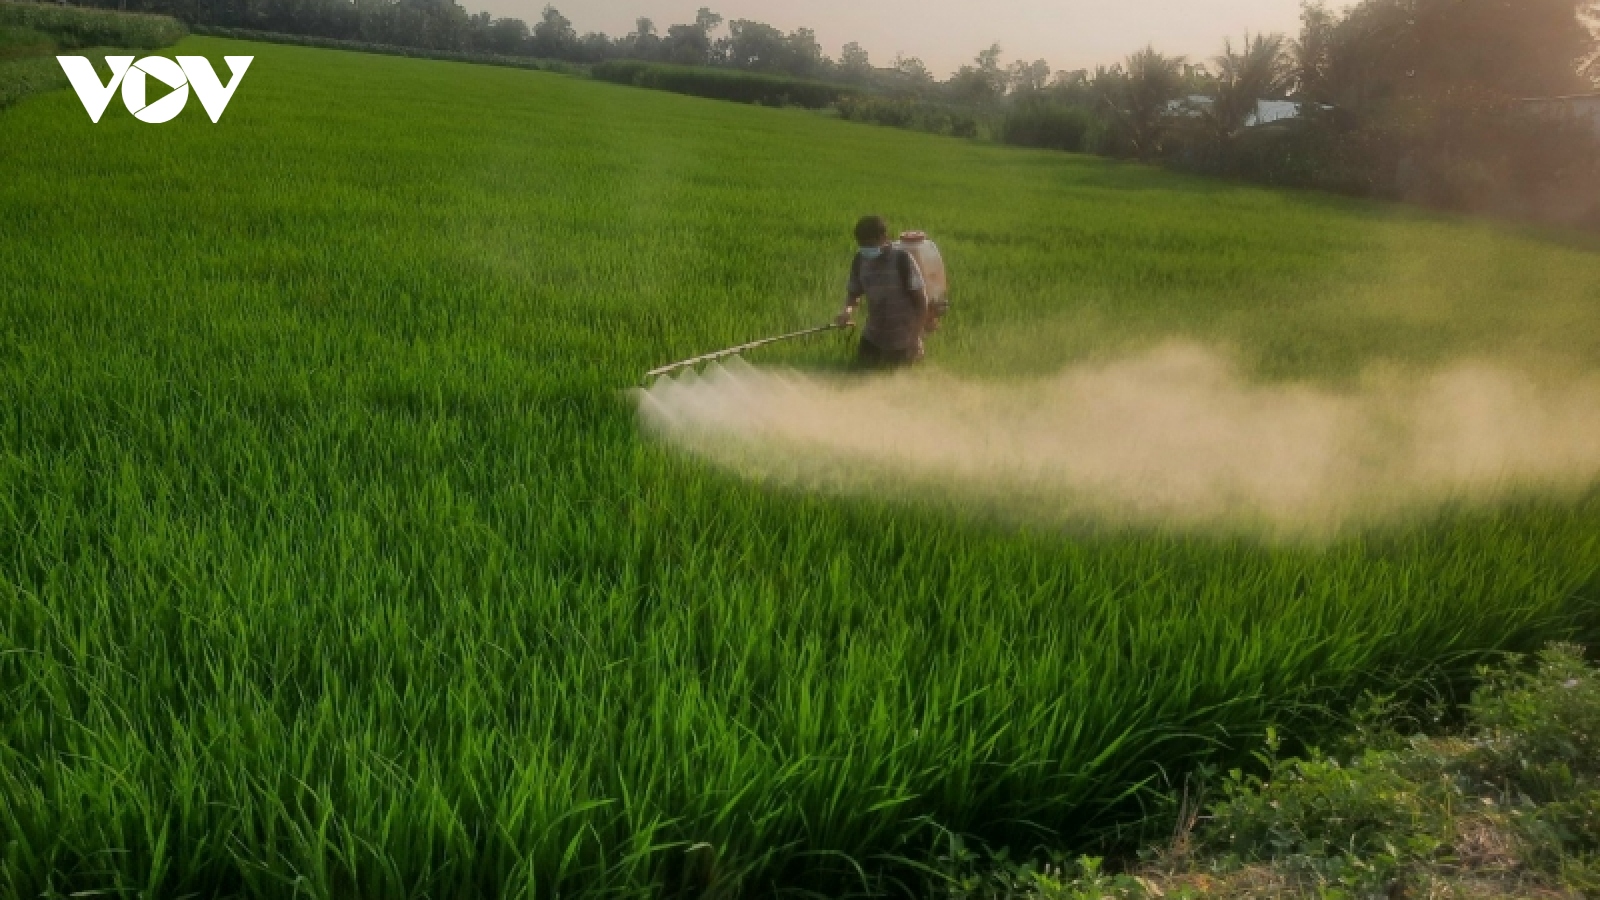 Tiền Giang chuyển hơn 7.200 ha đất lúa kém hiệu quả sang cây trồng khác